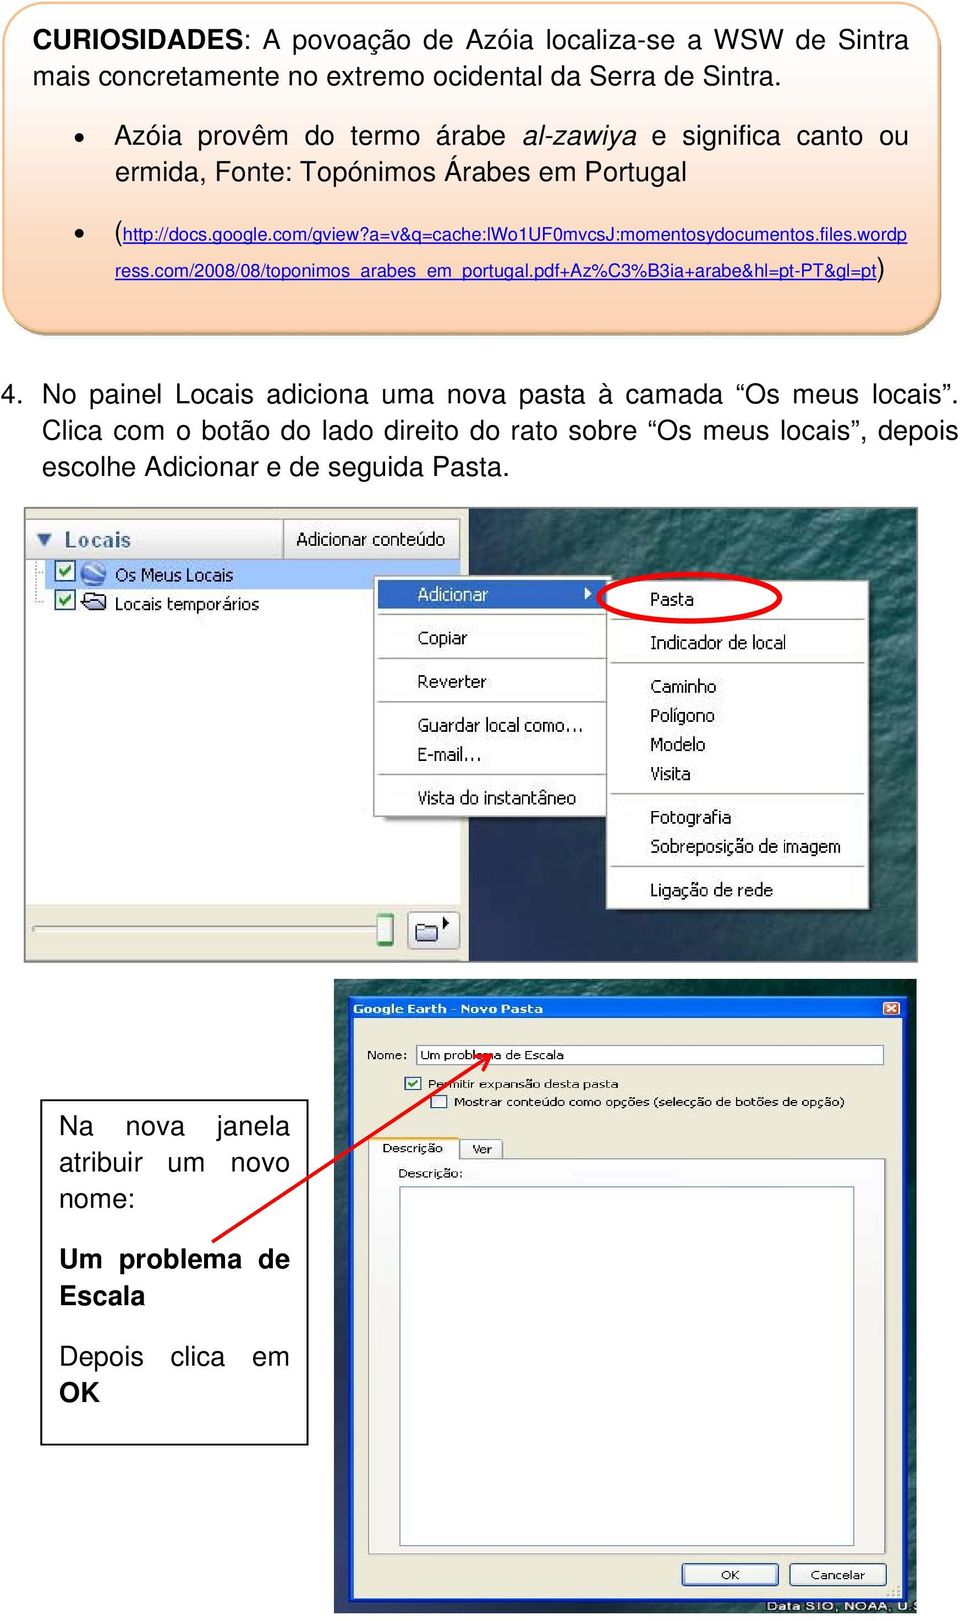 a=v&q=cache:lwo1uf0mvcsj:momentosydocumentos.files.wordp ress.com/2008/08/toponimos_arabes_em_portugal.pdf+az%c3%b3ia+arabe&hl=pt-pt&gl=pt) 4.